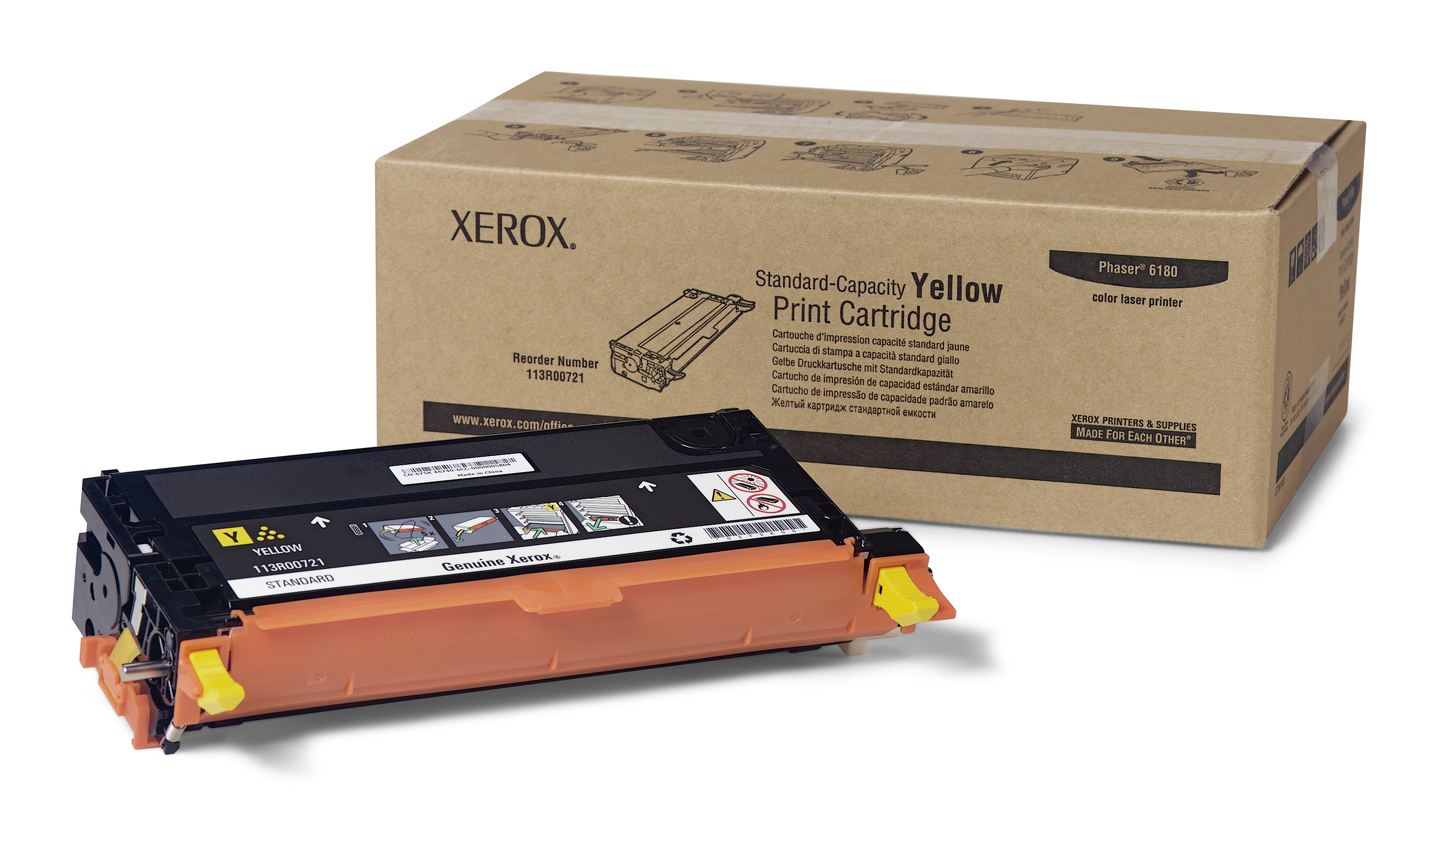 Toner Cartucho Xerox 113R00721 2000 Paginas Color Amarillo